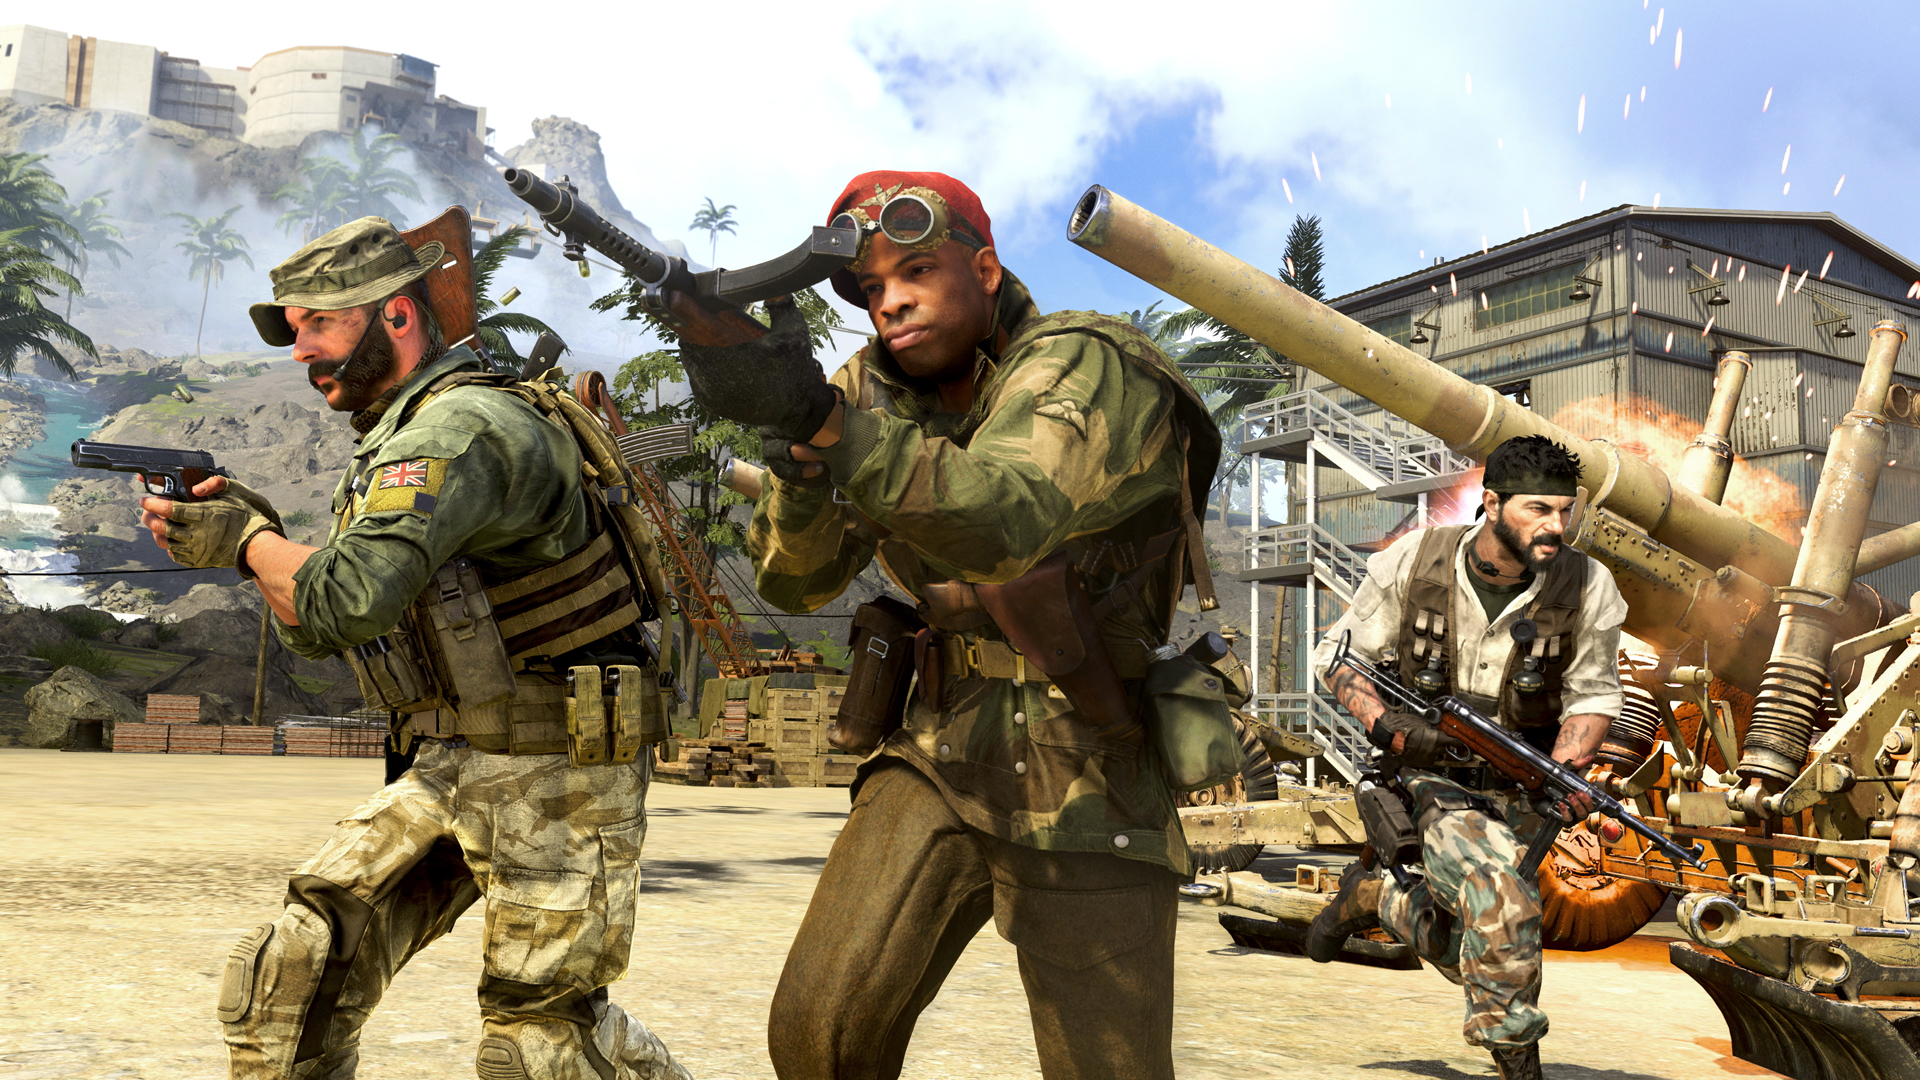 Programa Recrute um Amigo do Call of Duty: Warzone